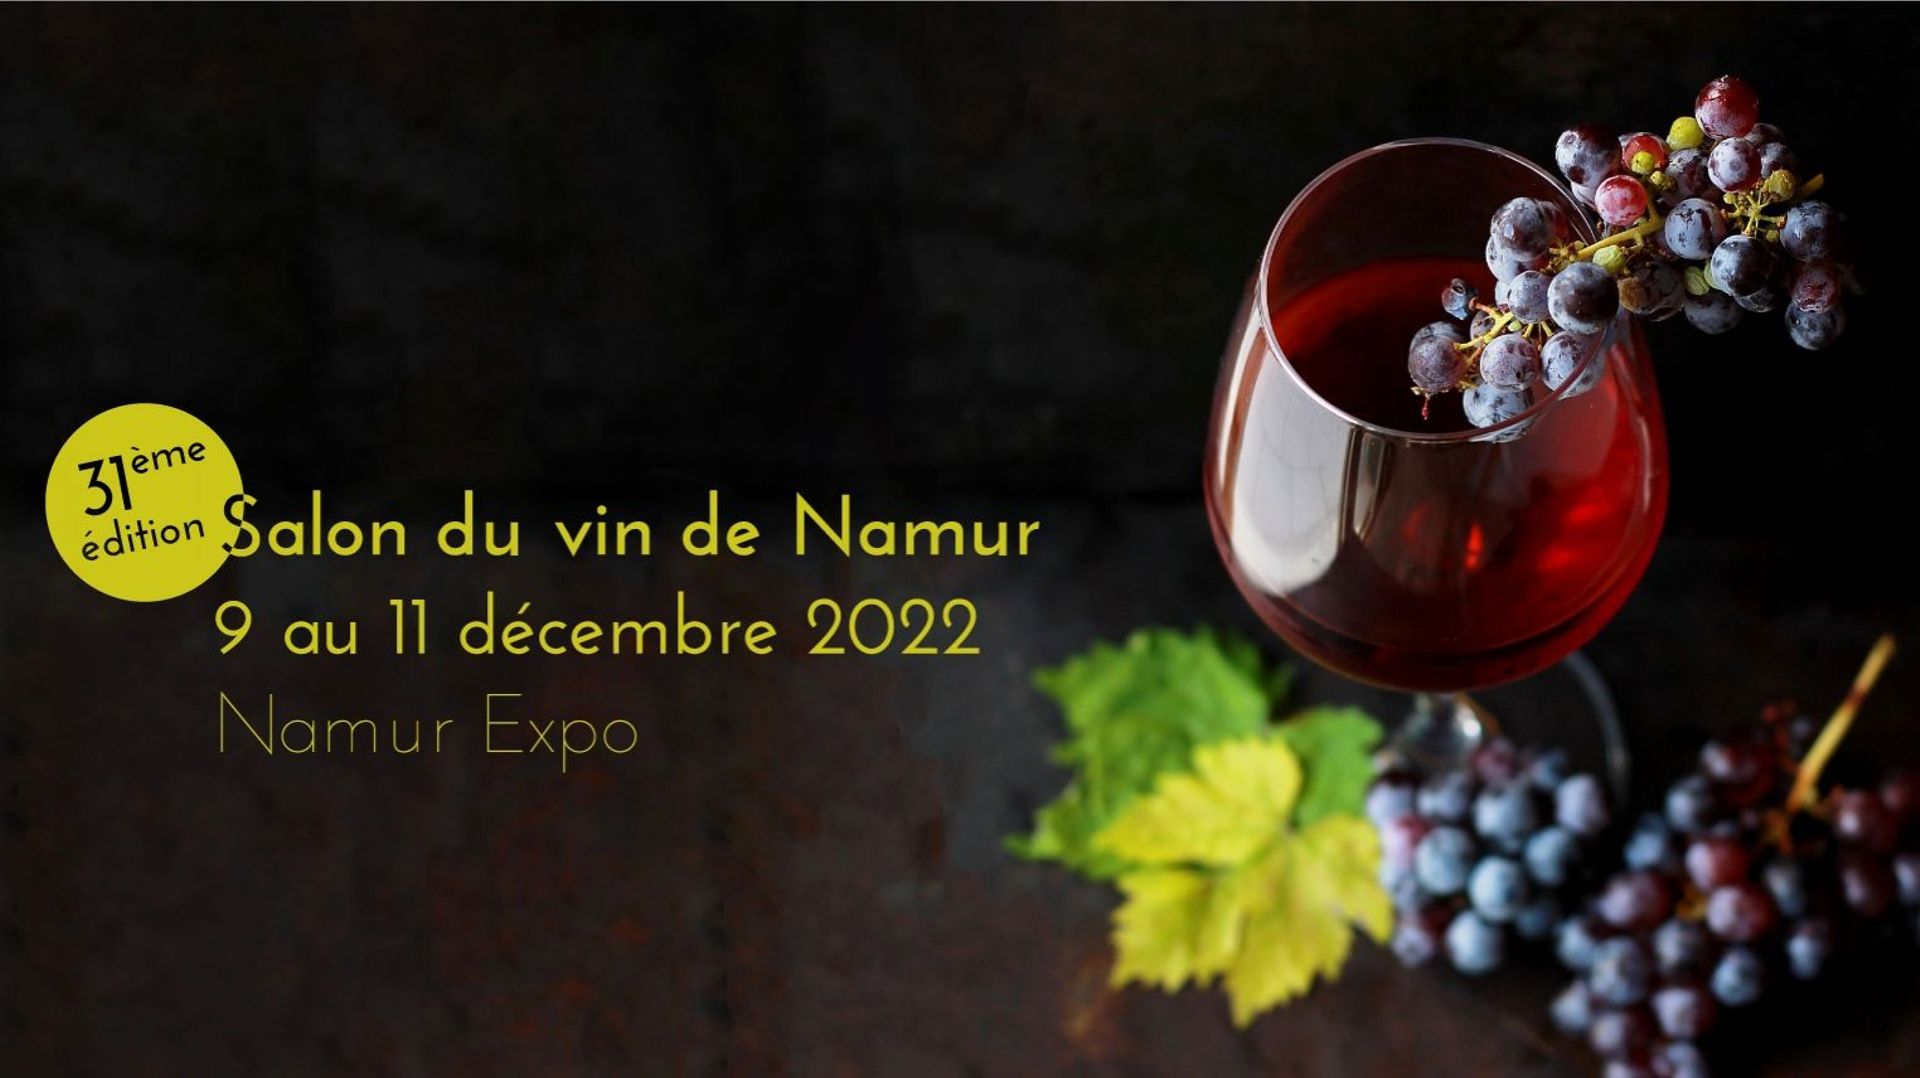 31e Salon du vin de Namur